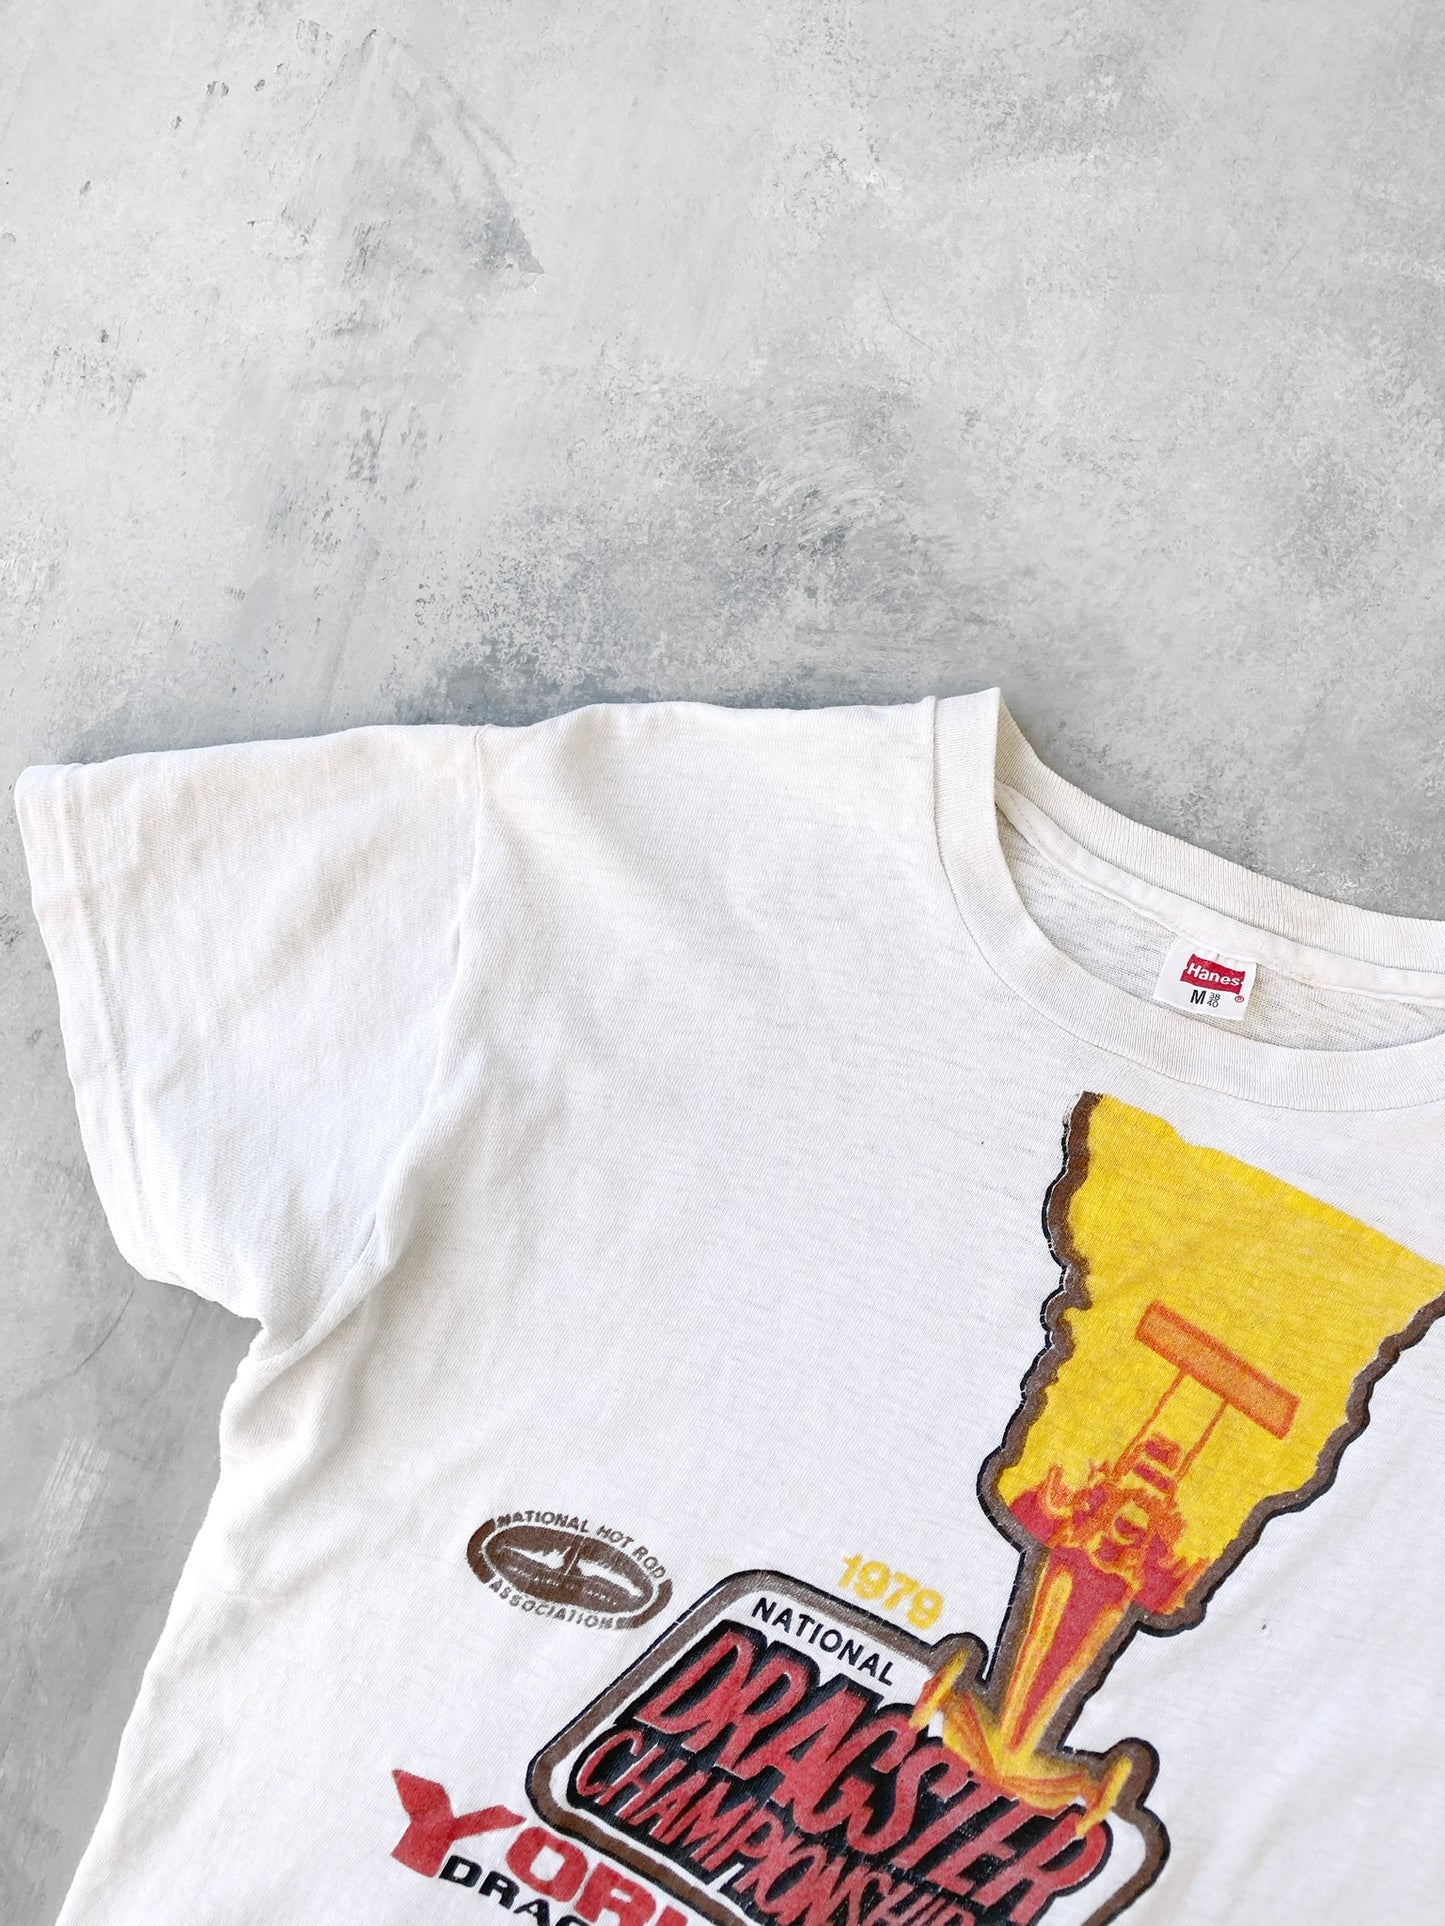 Dragster T-Shirt '79 - Medium